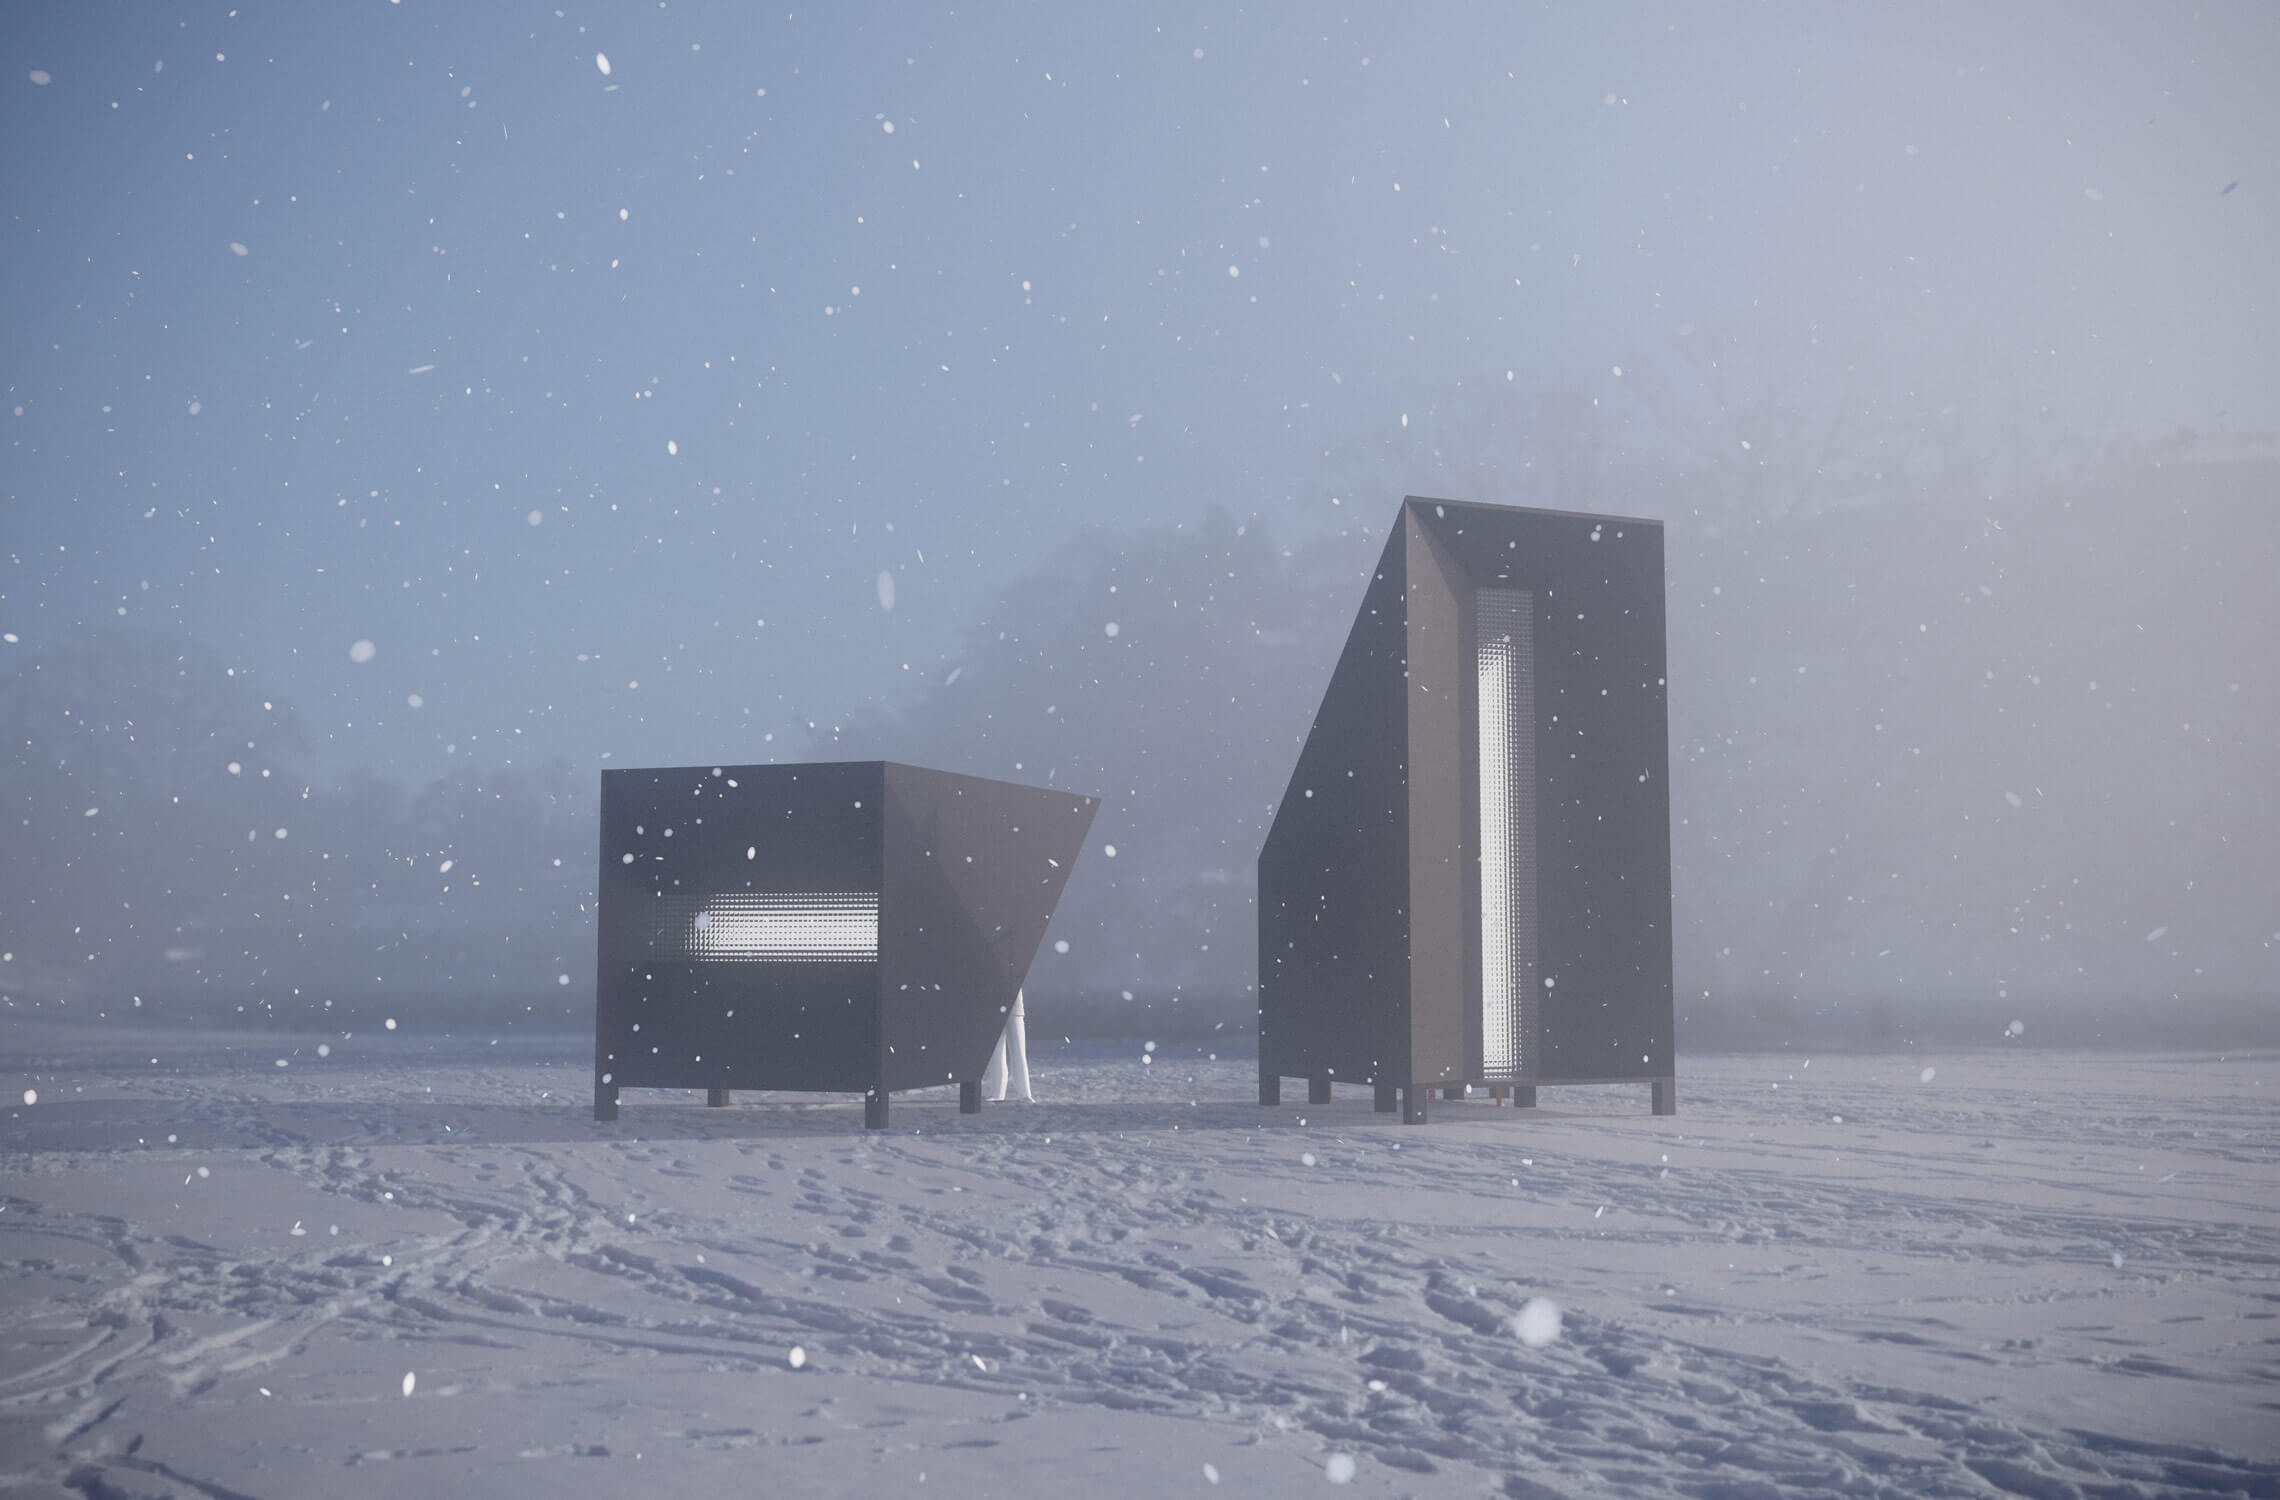 stark, monolithic structures set against a snowy landscape